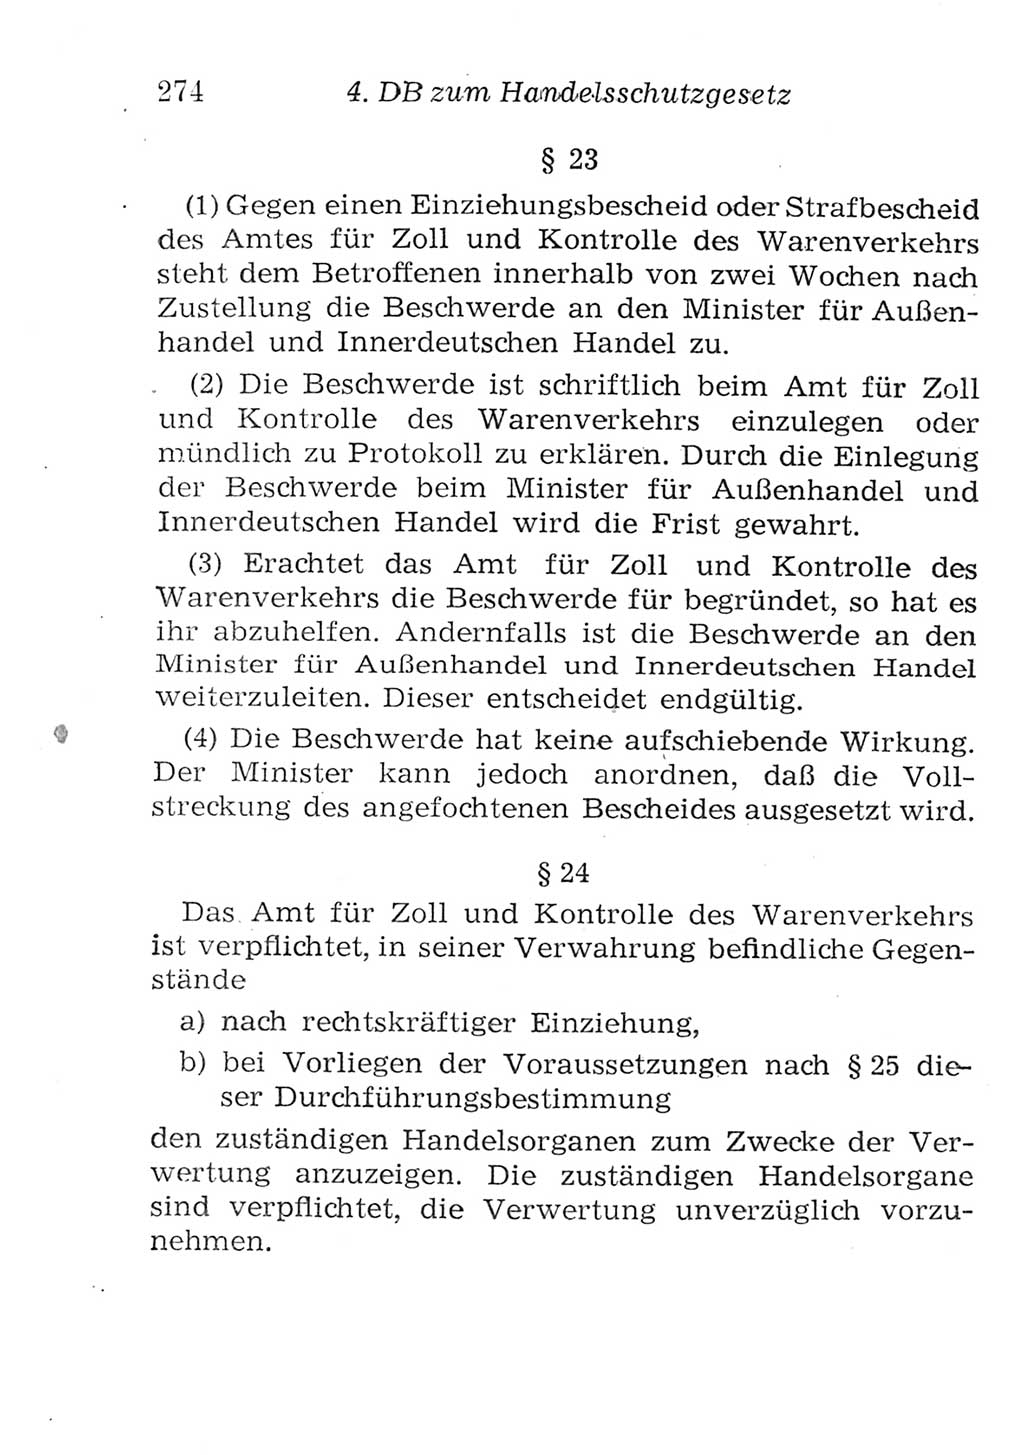 Strafgesetzbuch (StGB) und andere Strafgesetze [Deutsche Demokratische Republik (DDR)] 1957, Seite 274 (StGB Strafges. DDR 1957, S. 274)